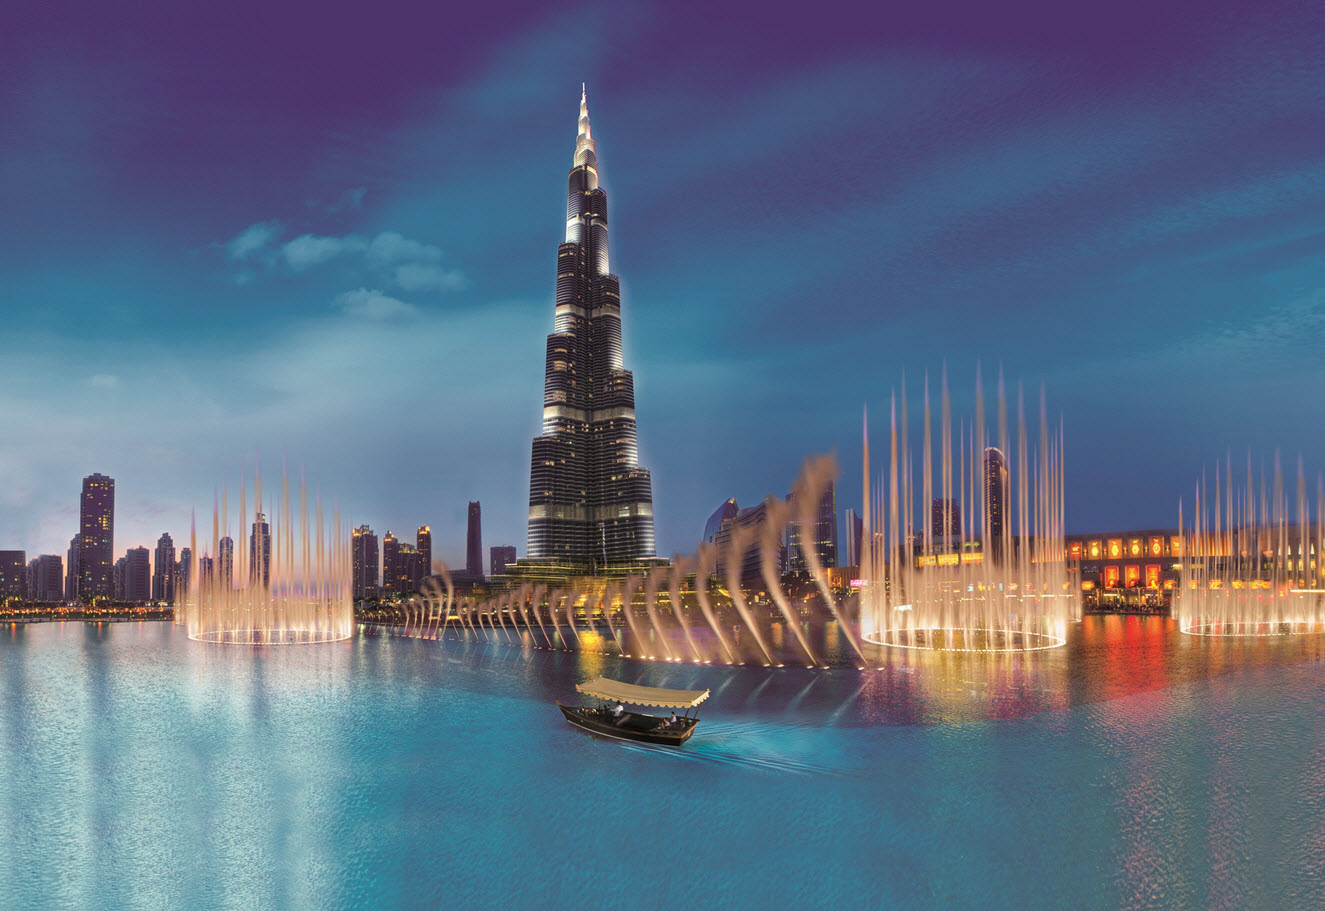 La Fontaine de Dubai | Destination | Inspiration for Travellers